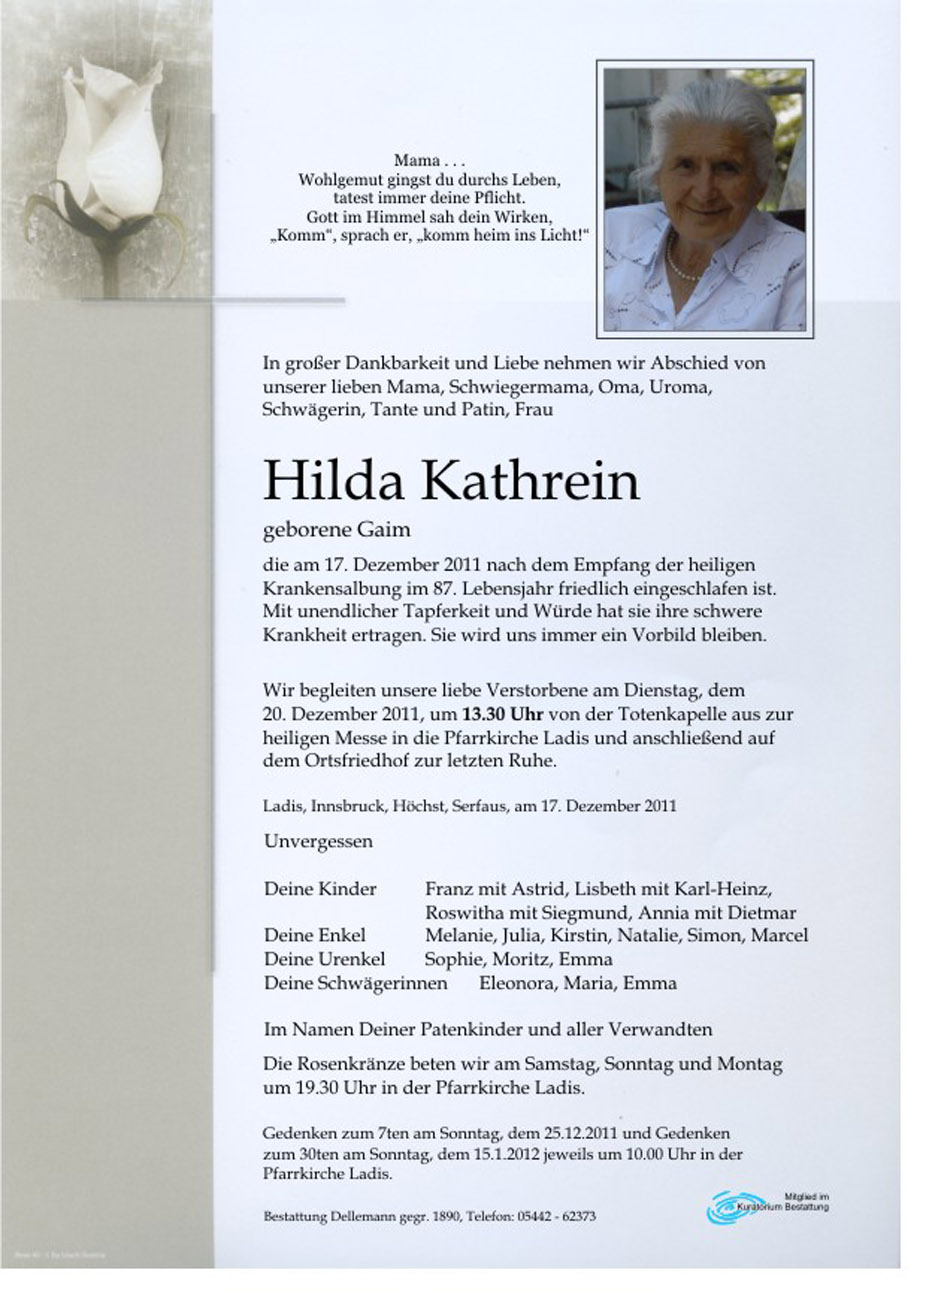   Hilda Kathrein